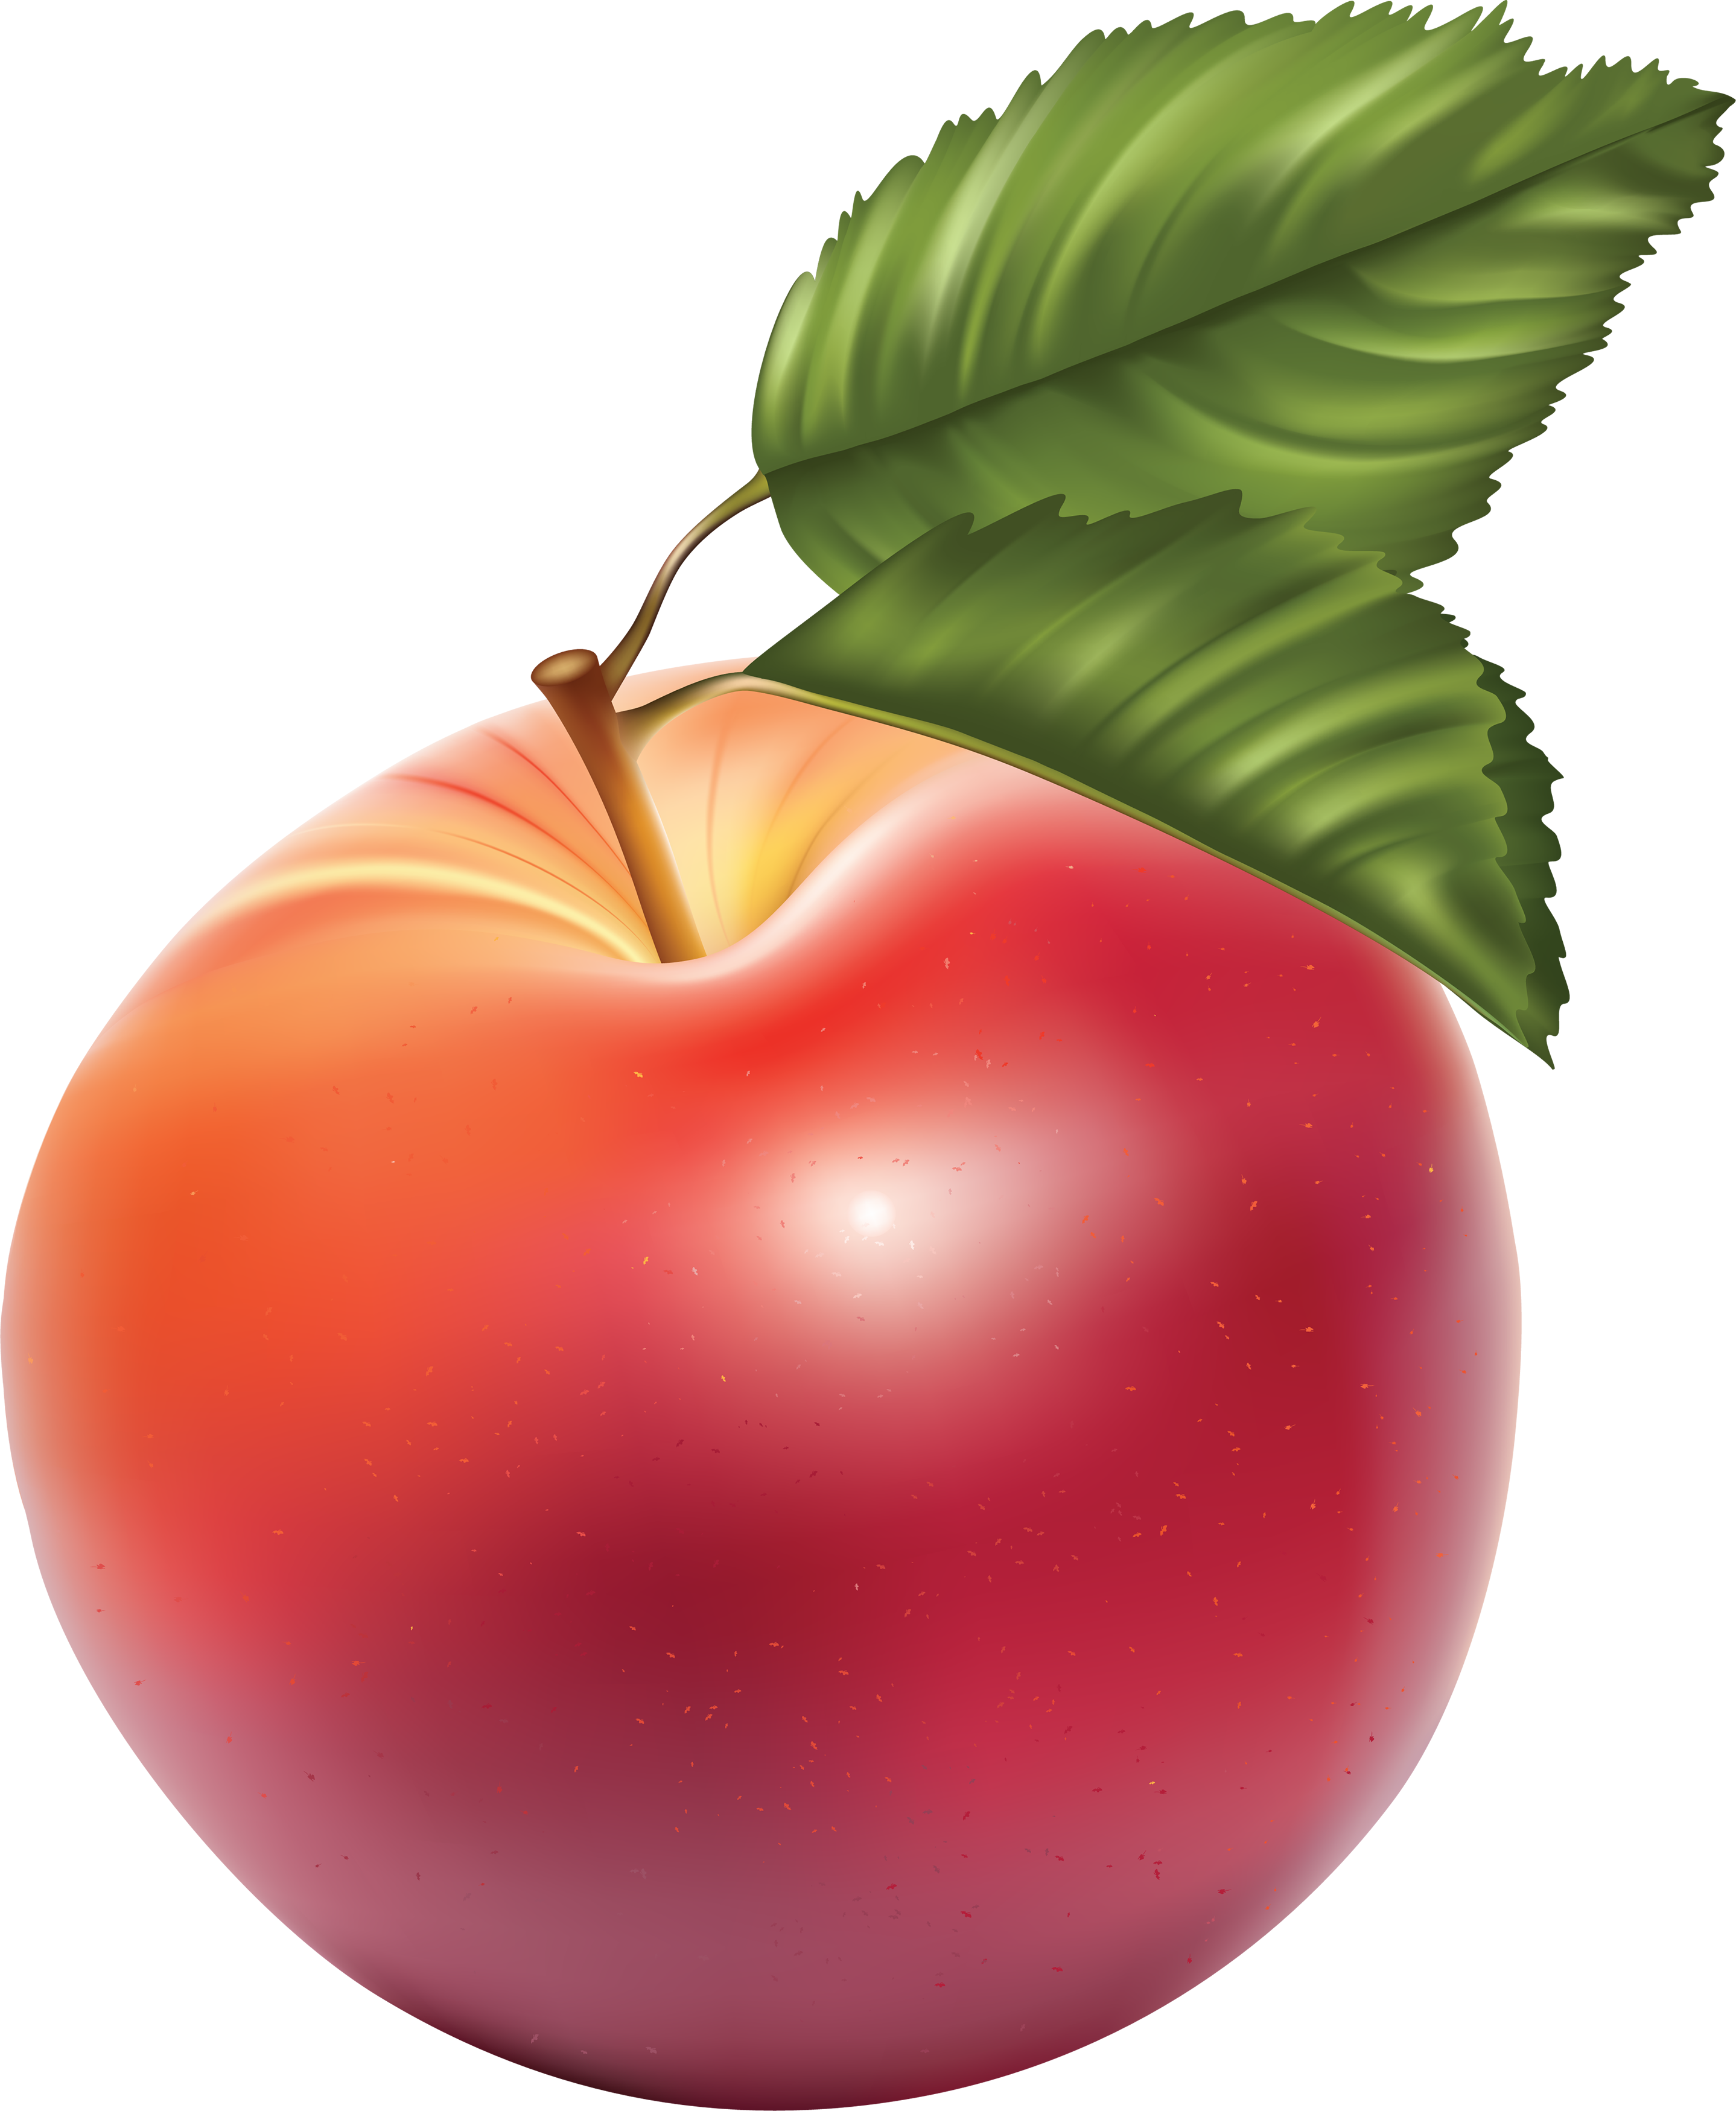 Hình ảnh kết xuất quả táo đỏ